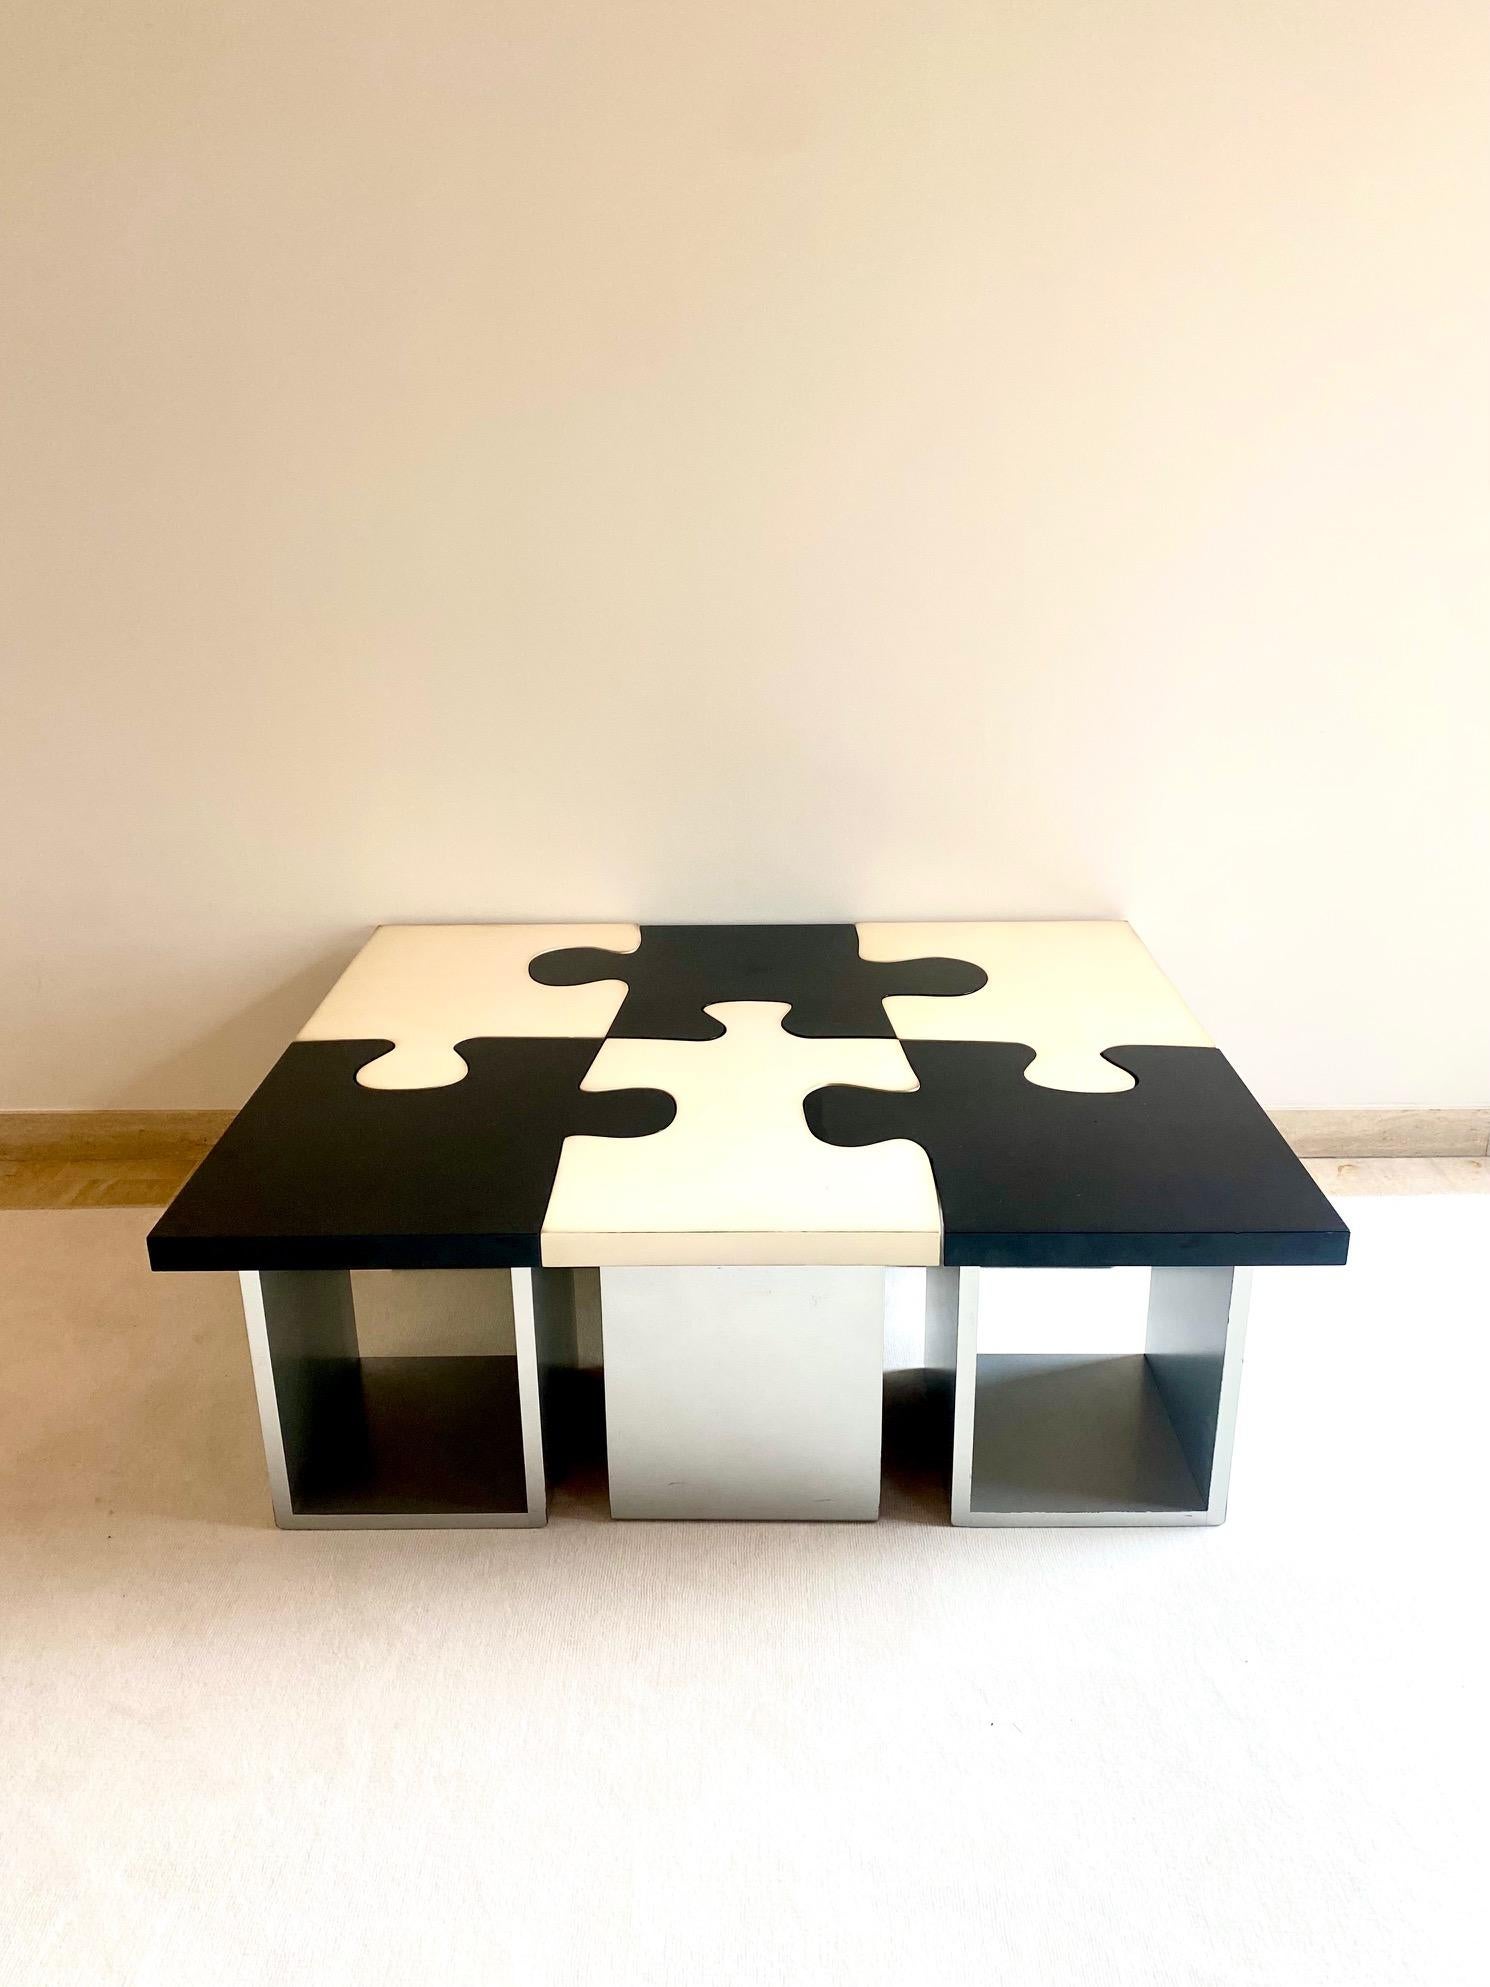 Seltener Puzzletisch aus den siebziger Jahren !
Sechs Teile eines schwarz-weißen Puzzles.

Guter Zustand.